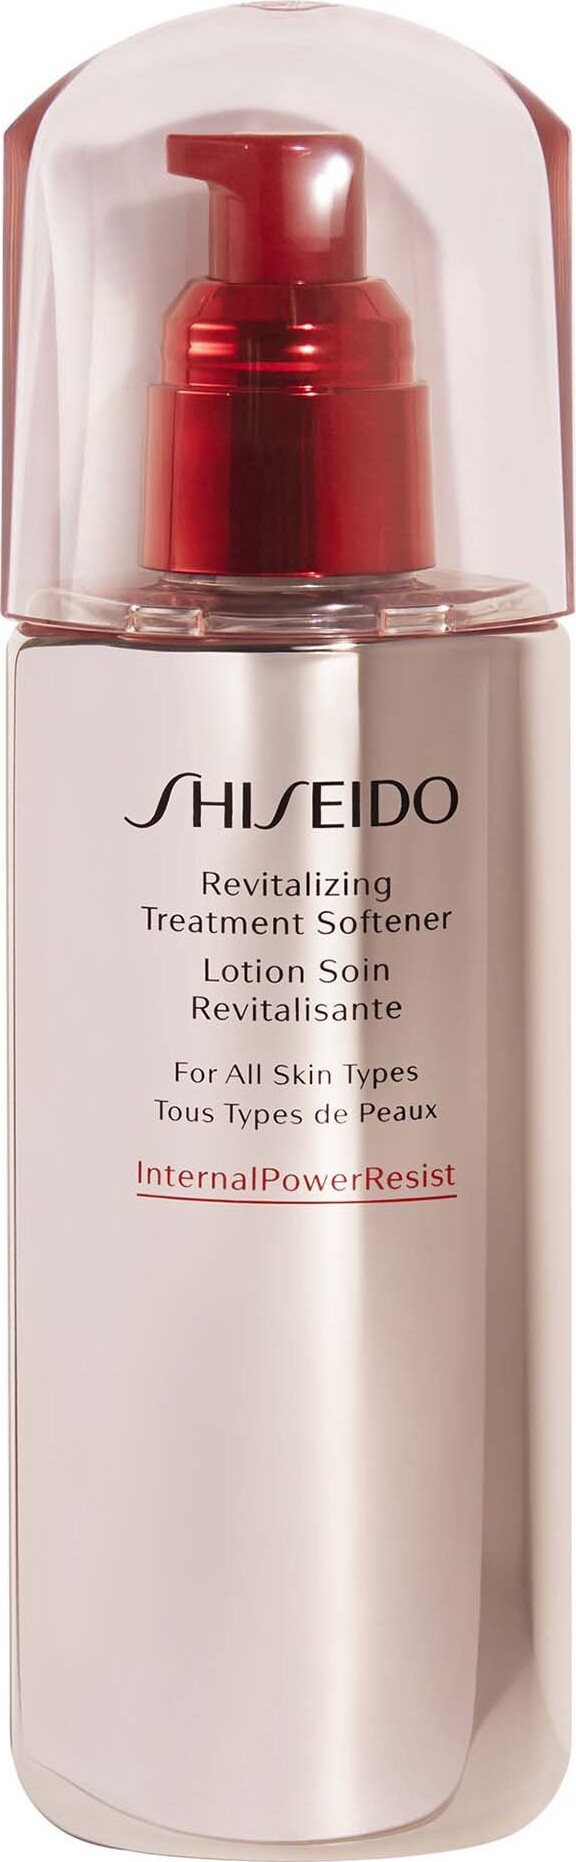 Billede af Shiseido - Revitalizing Treatment Softener 150 Ml